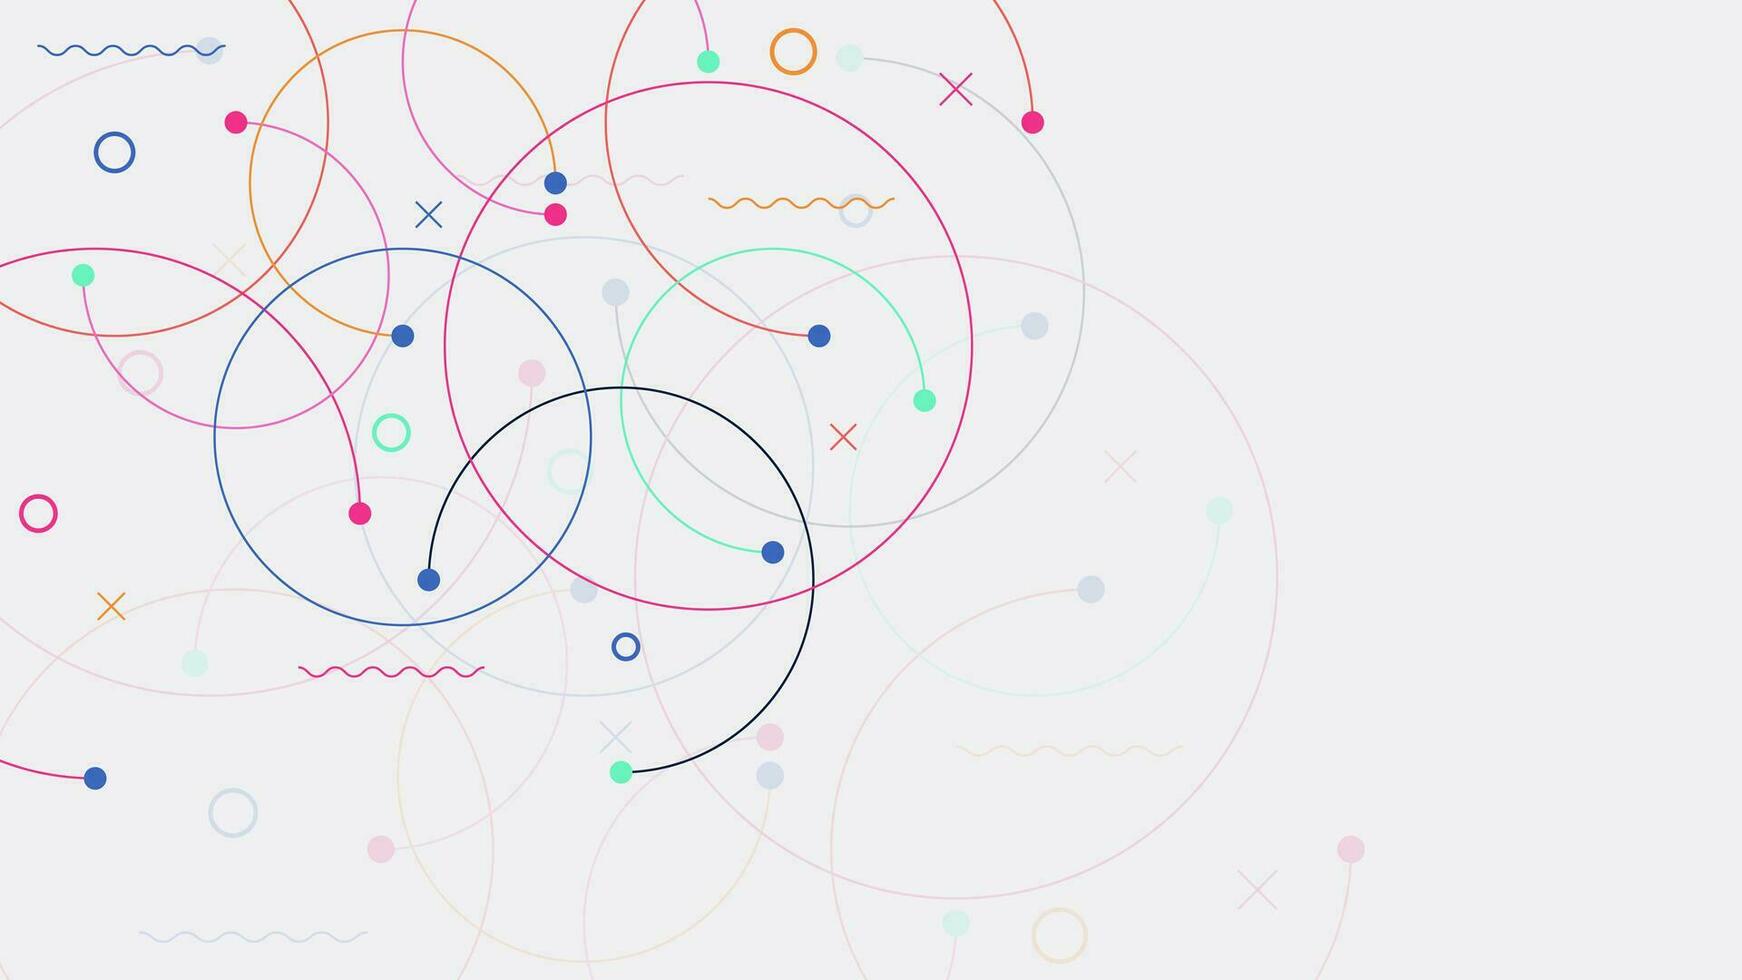 plexus cirkels verbinding voor globaal communicatie, groot gegevens visualisatie, wetenschap en technologie achtergrond ontwerp. vector illustratie.